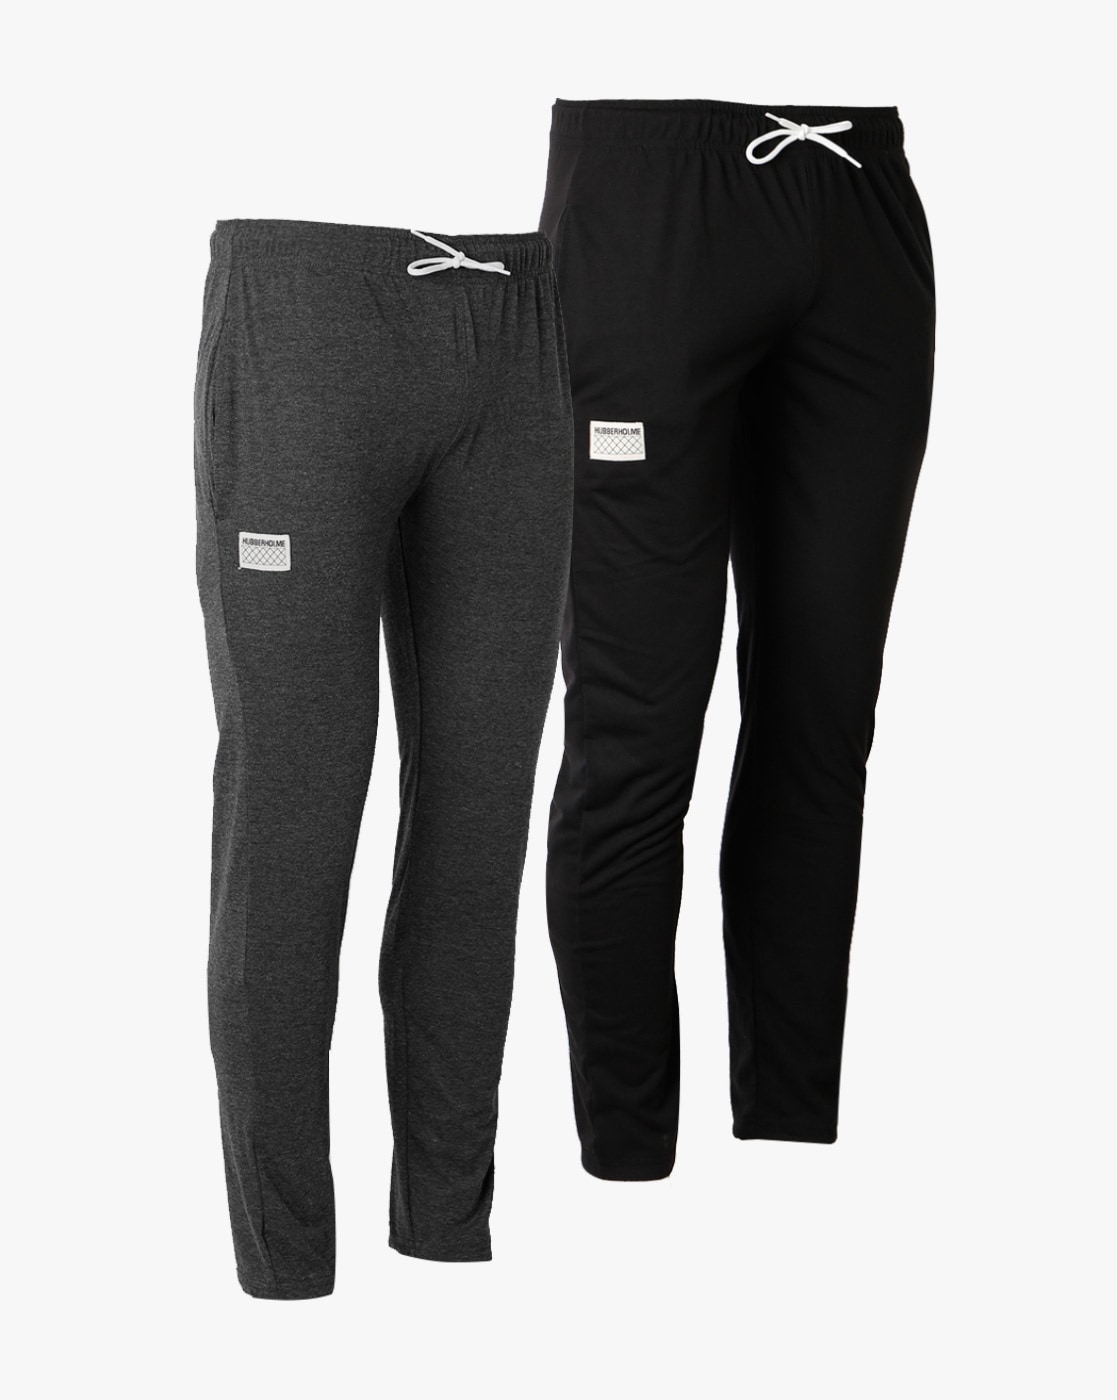 Buy Black Track Pants for Women by Hubberholme Online  Ajiocom